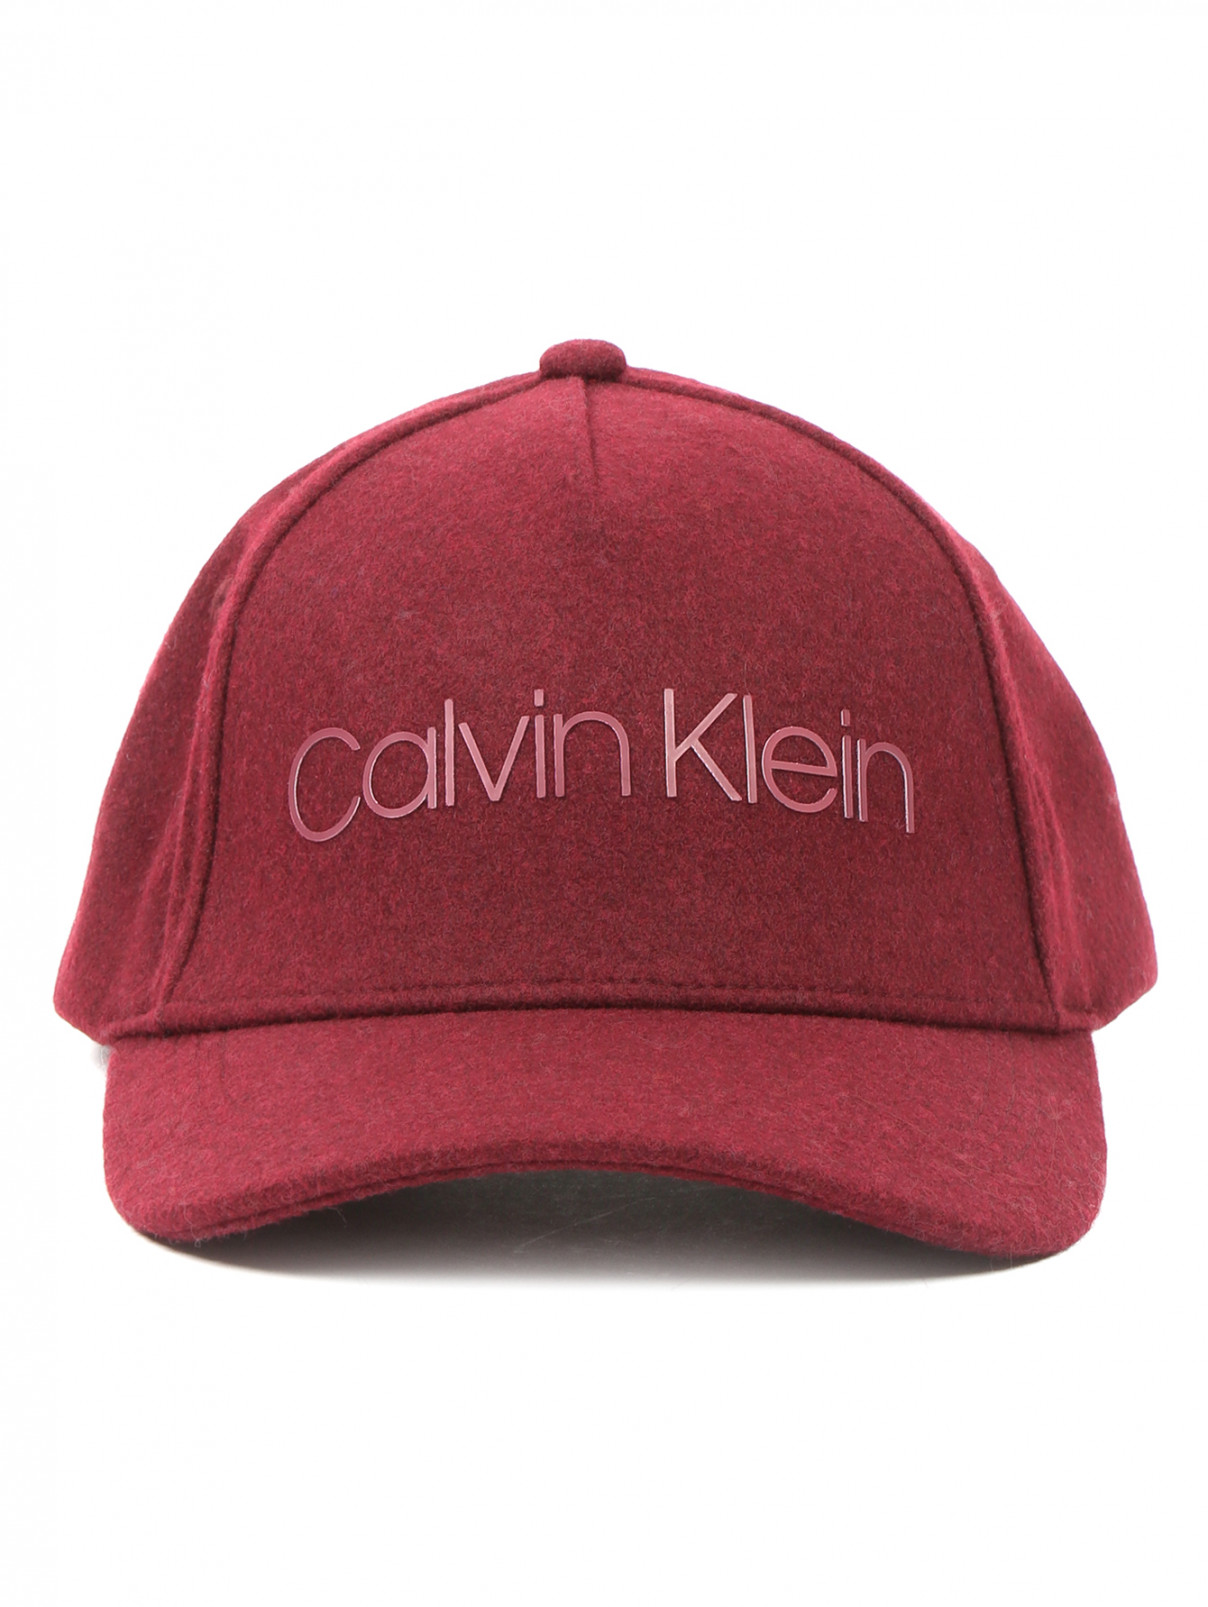 Кепка из смешанной шерсти с принтом Calvin Klein  –  Общий вид  – Цвет:  Красный